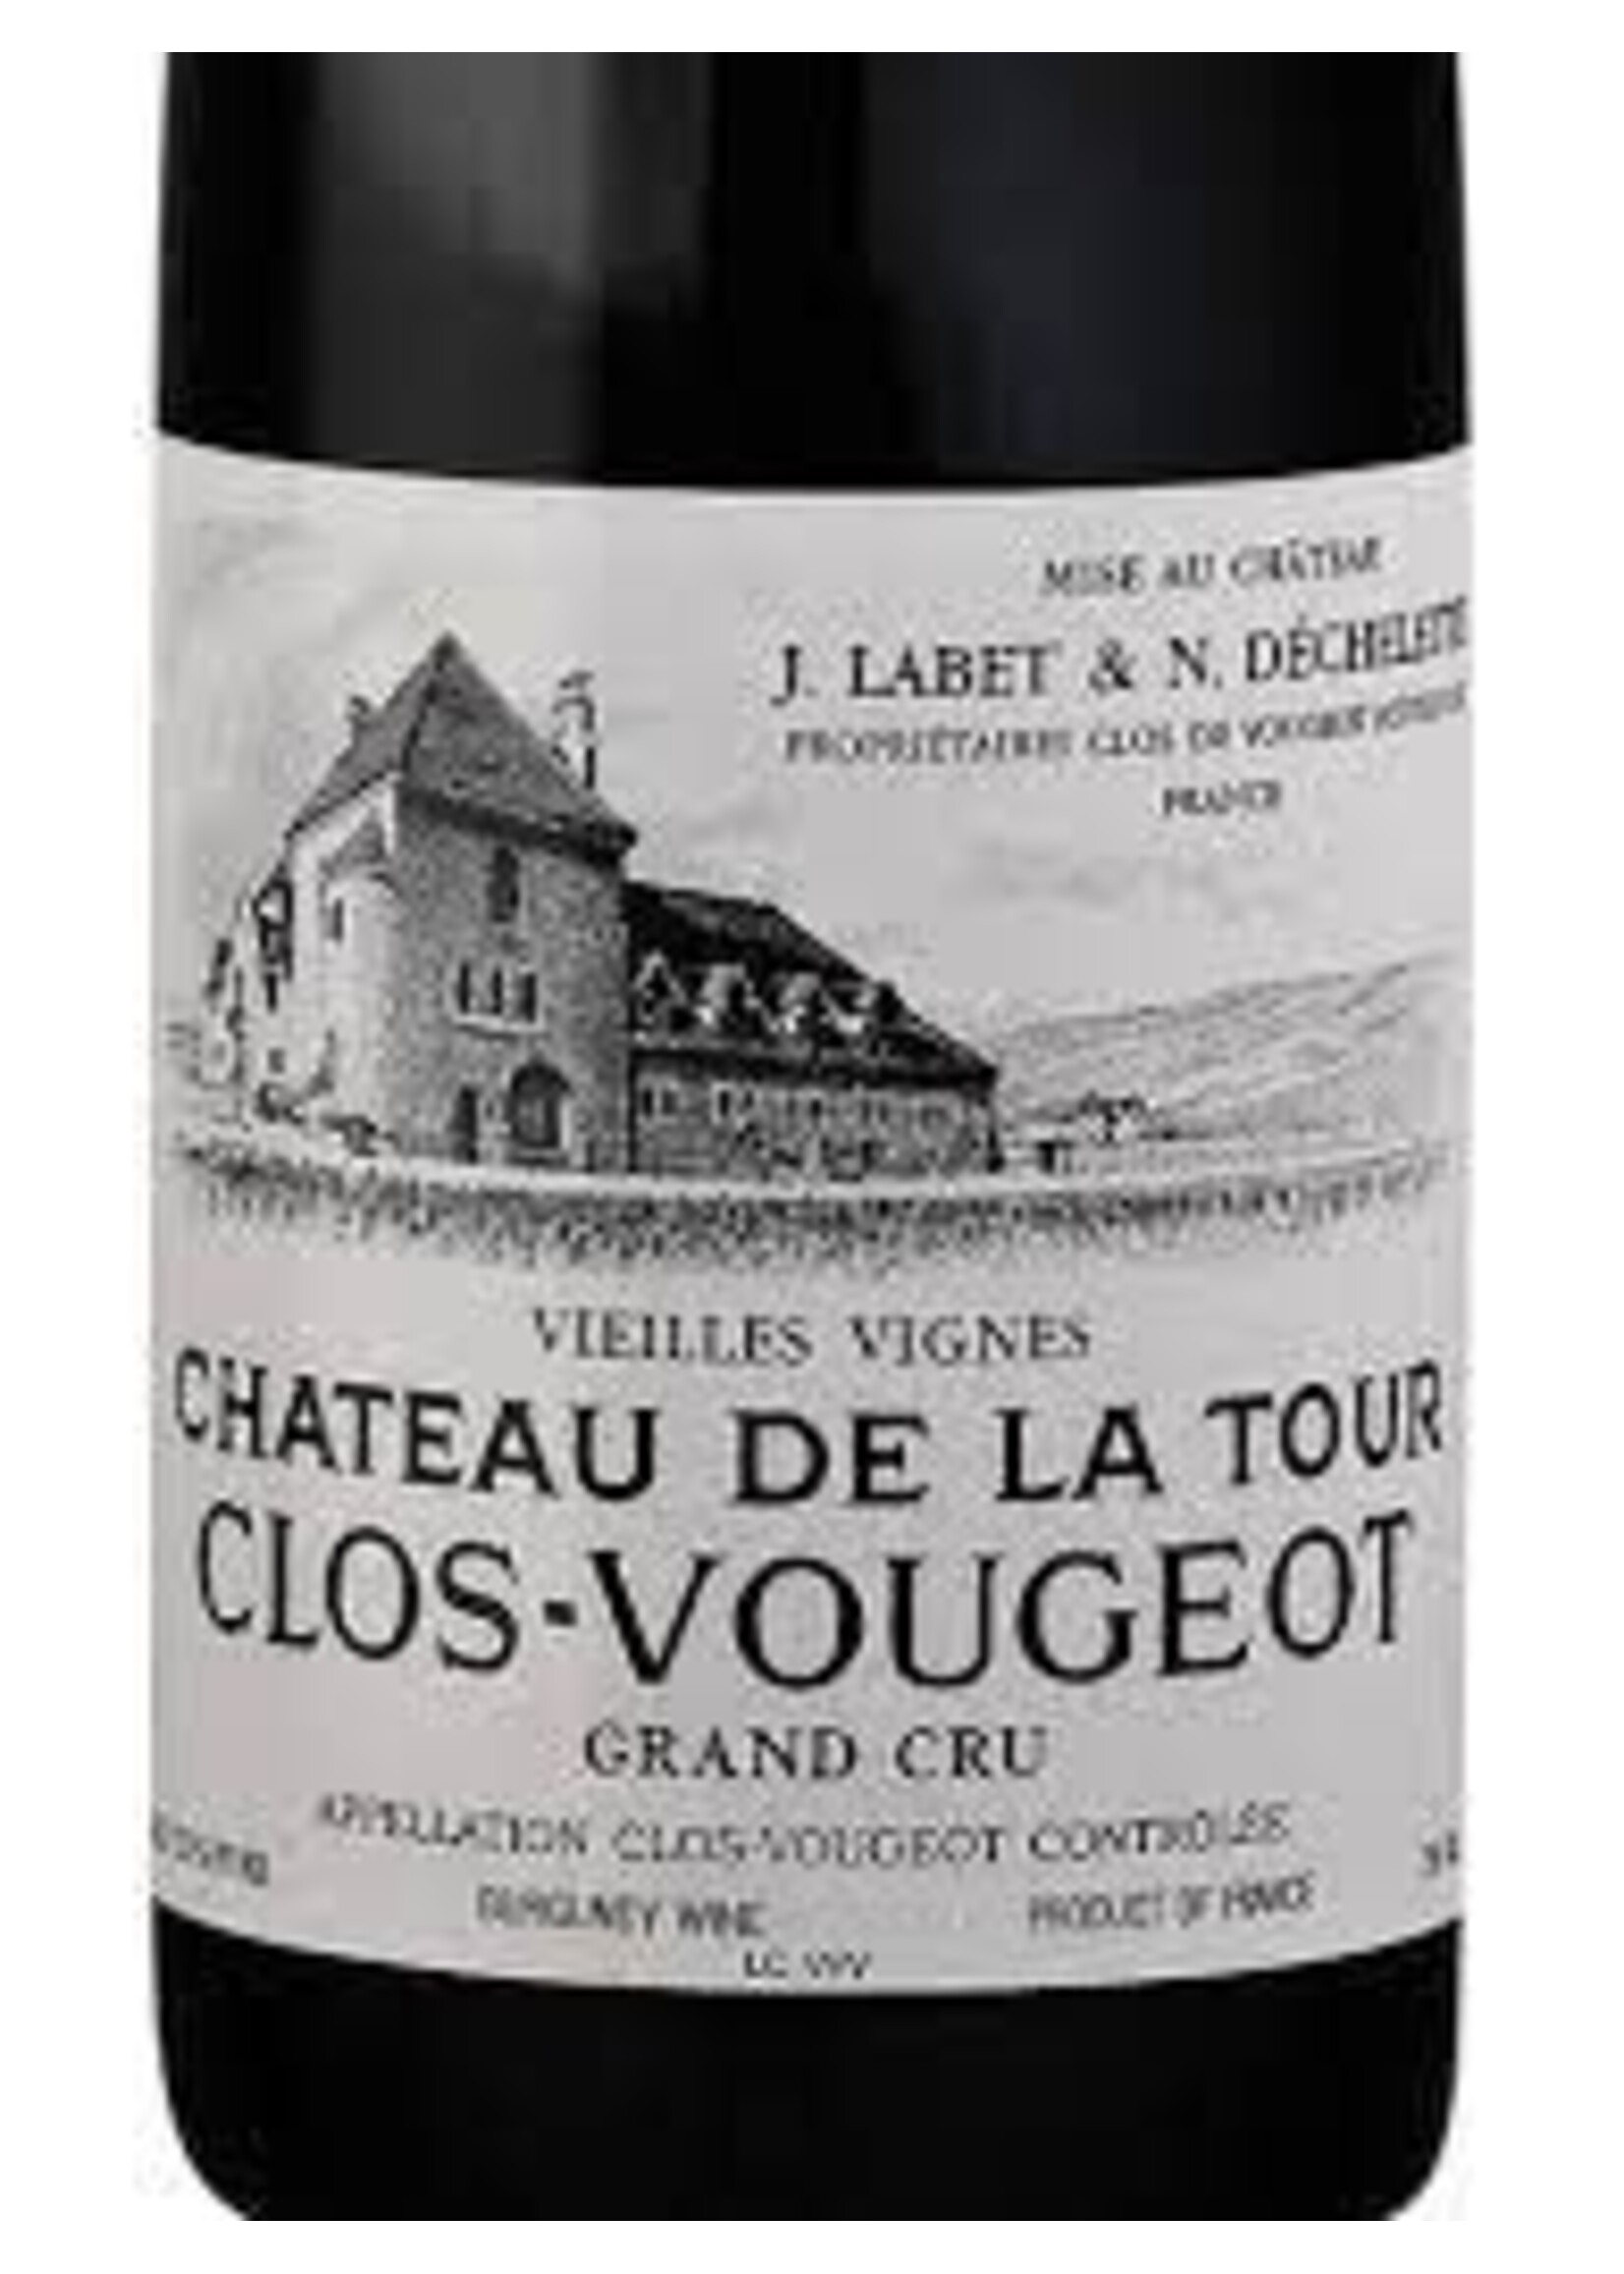 Chateau de la Tour 2016 Clos Vougeot Vieilles Vignes Grand Cru 750ml